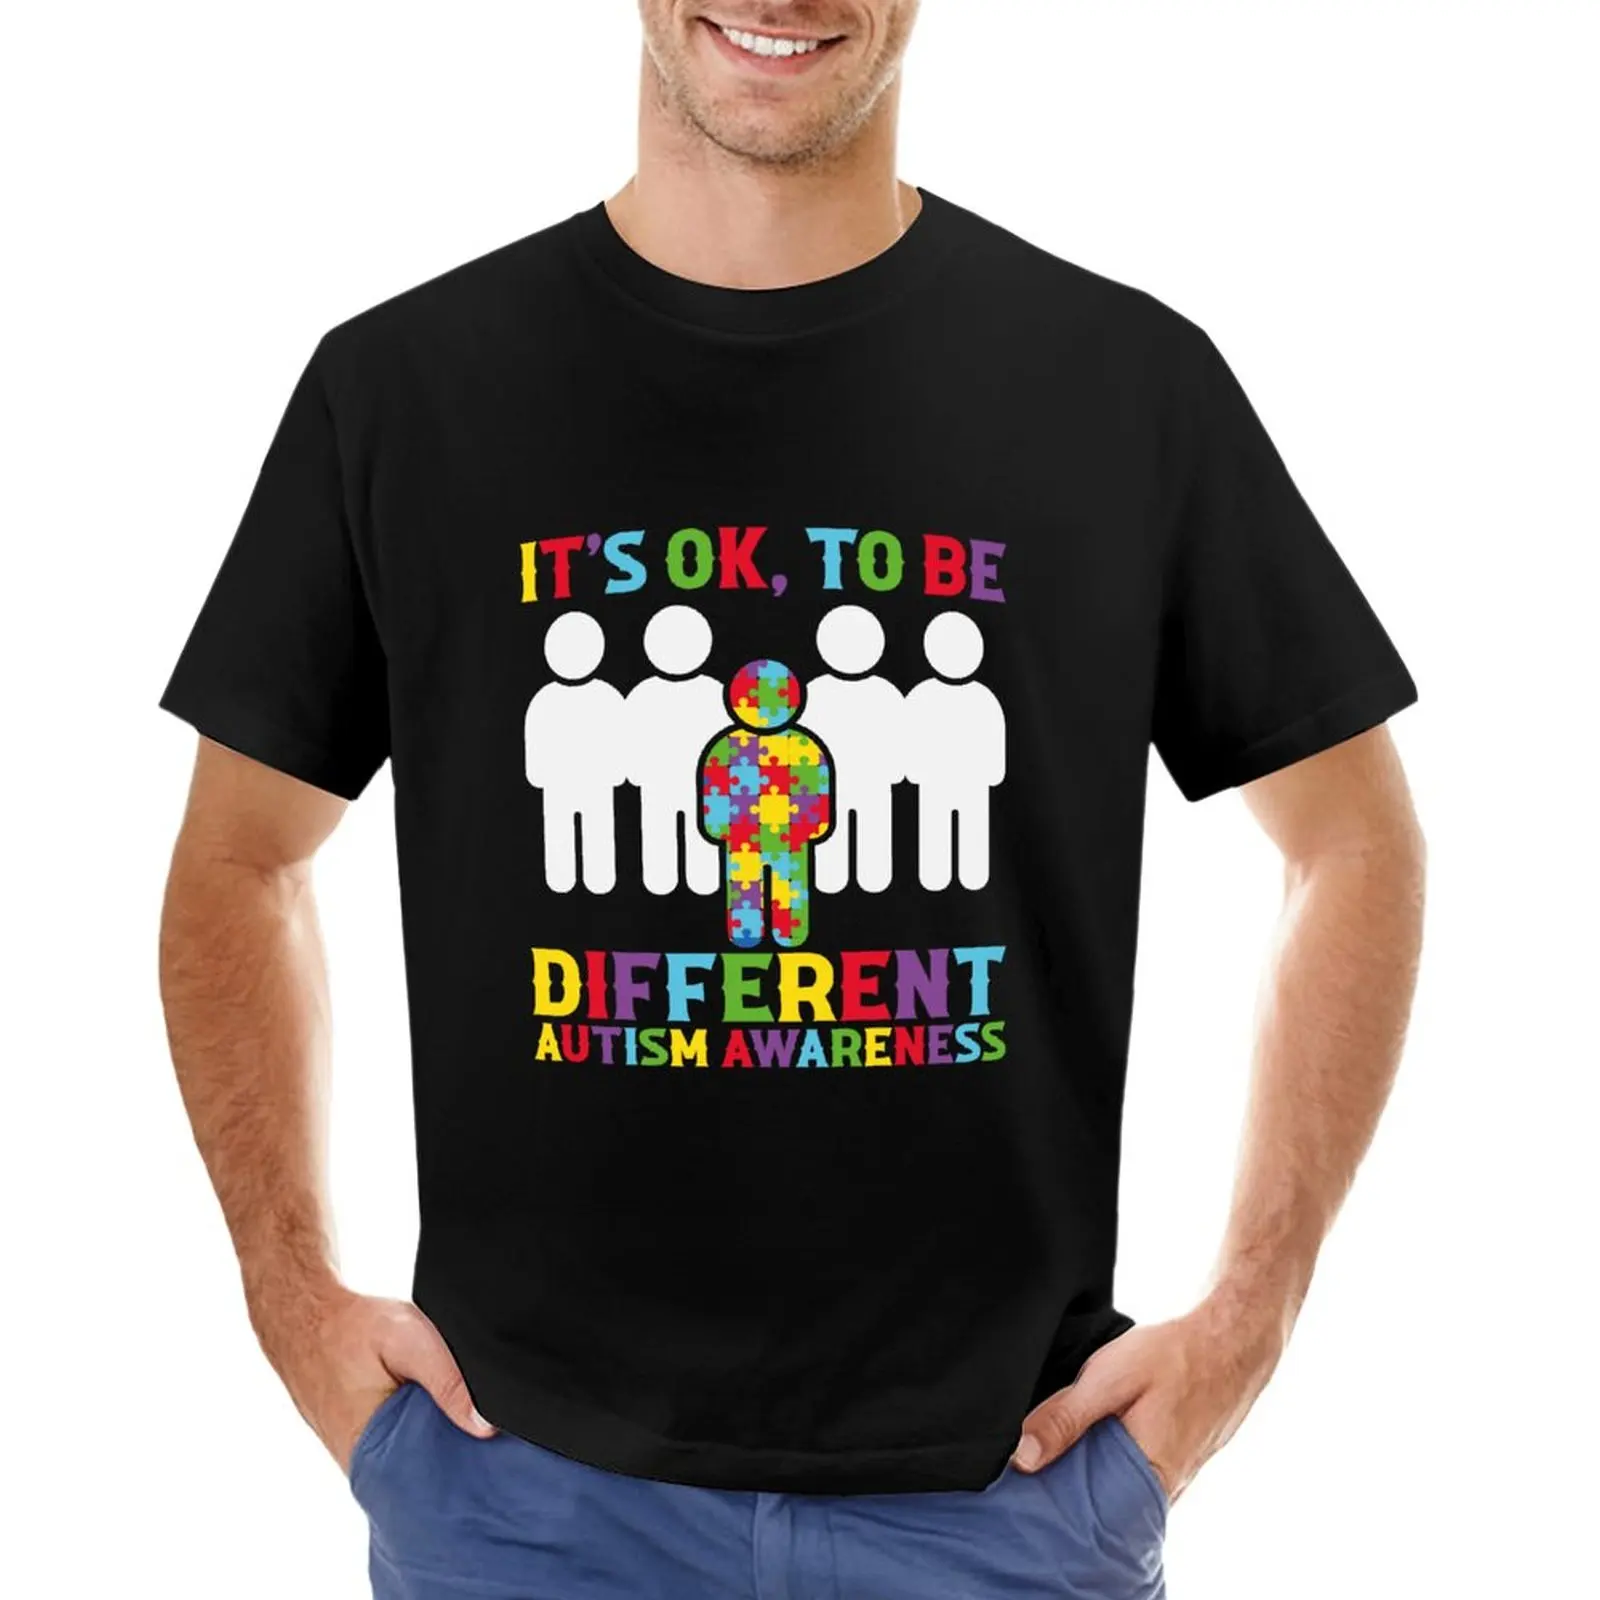 

Мужская футболка для осведомленности об аутизме во всем мире, это нормально, разные футболки, эстетическая одежда, простые футболки